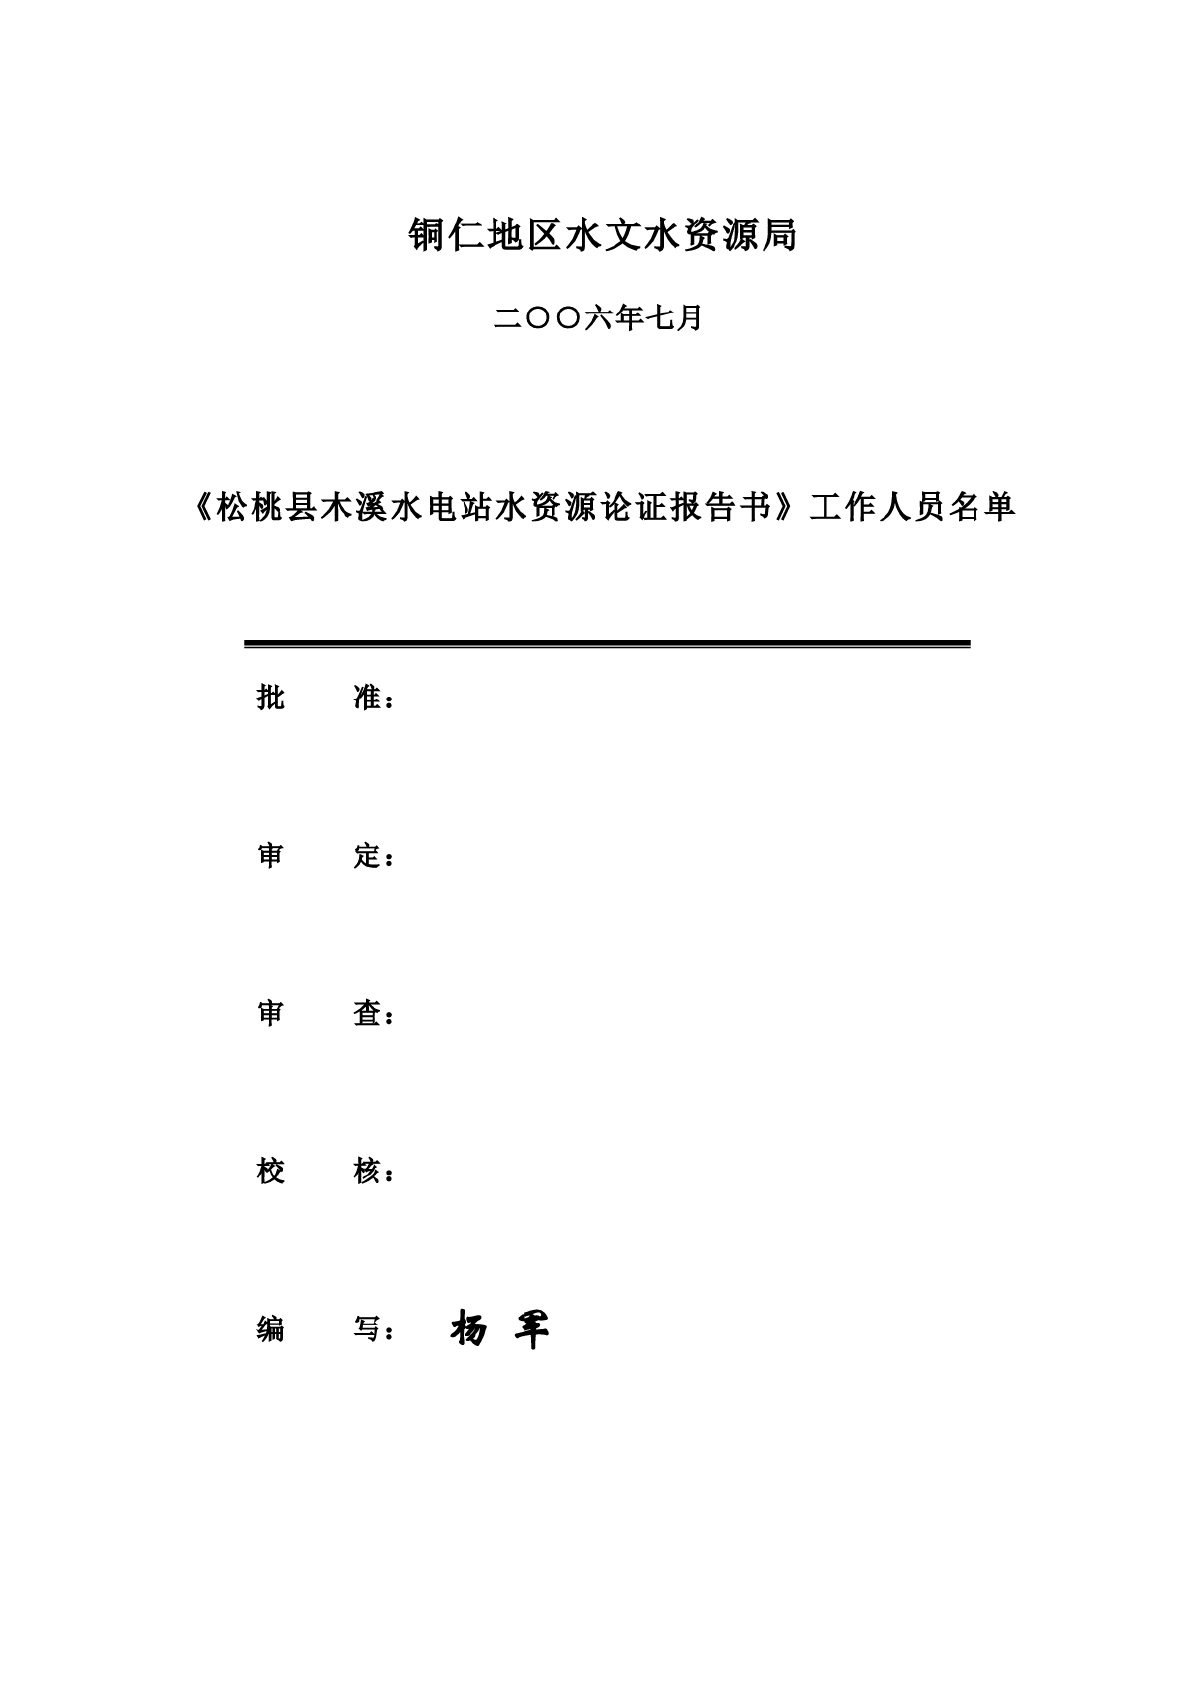 水电站水资源论证(最终稿).rar-图二